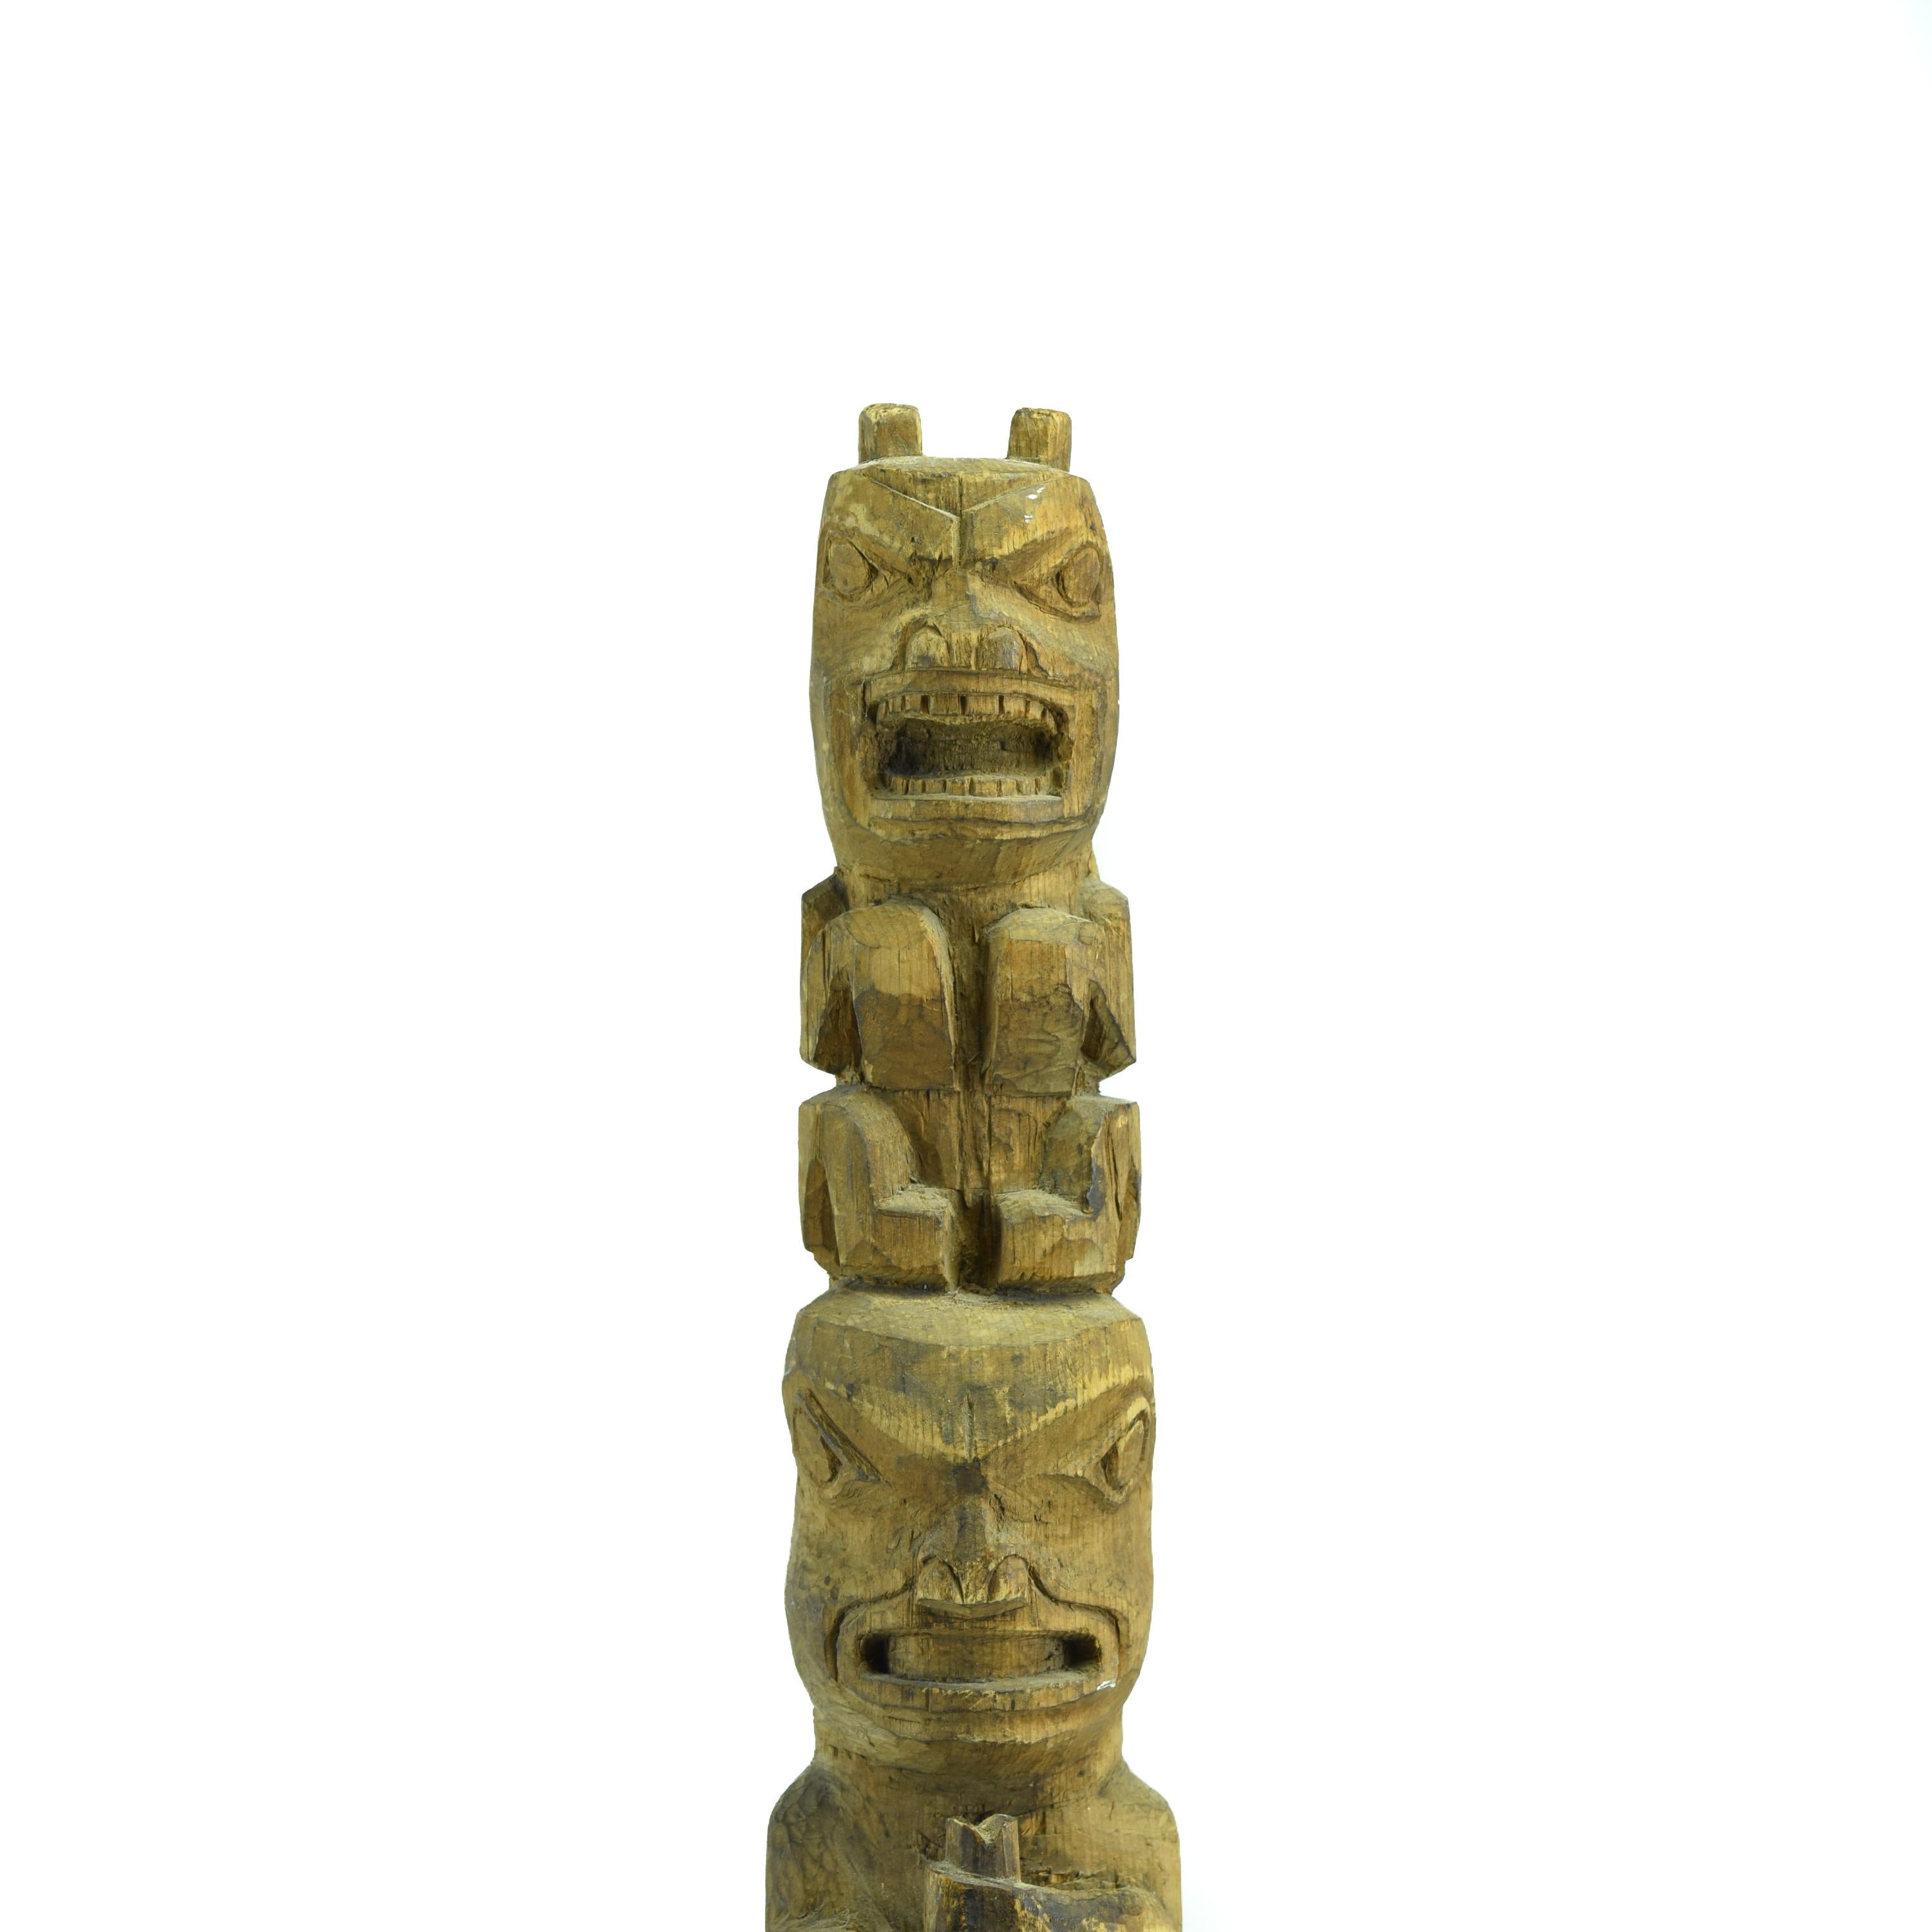 Mât totémique Tlingit multifigure complexe de Sitka, Alaska. Ce modèle de totem en cèdre rouge de grande taille a été sculpté par un artiste Tlingit de Sitka, en Alaska. Le mât est exceptionnellement complexe pour un mât Tlingit et comporte sept